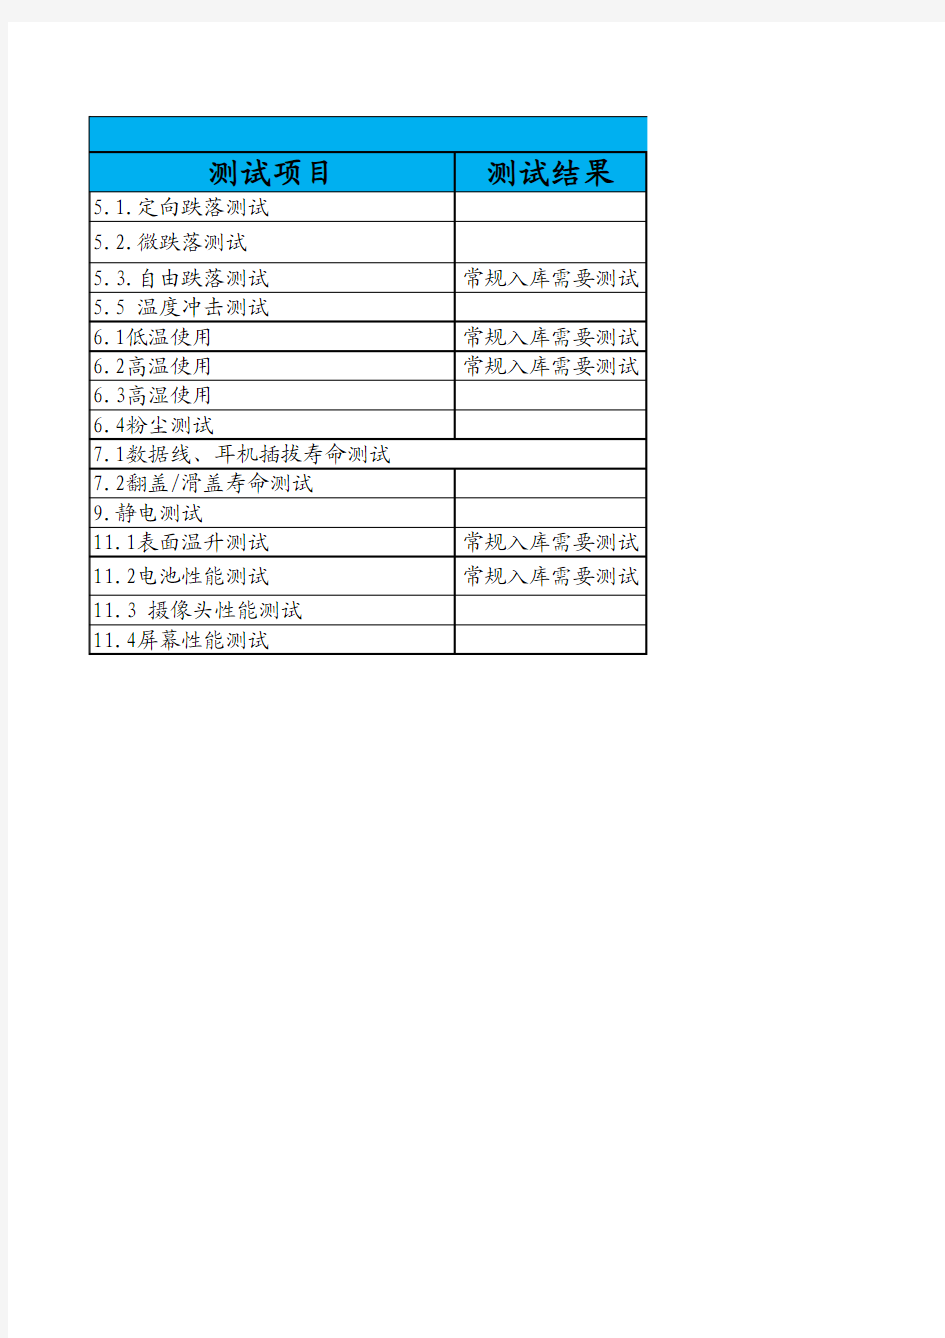 3.中国移动TD终端测试规范-结构及硬件-V2.0-20130204